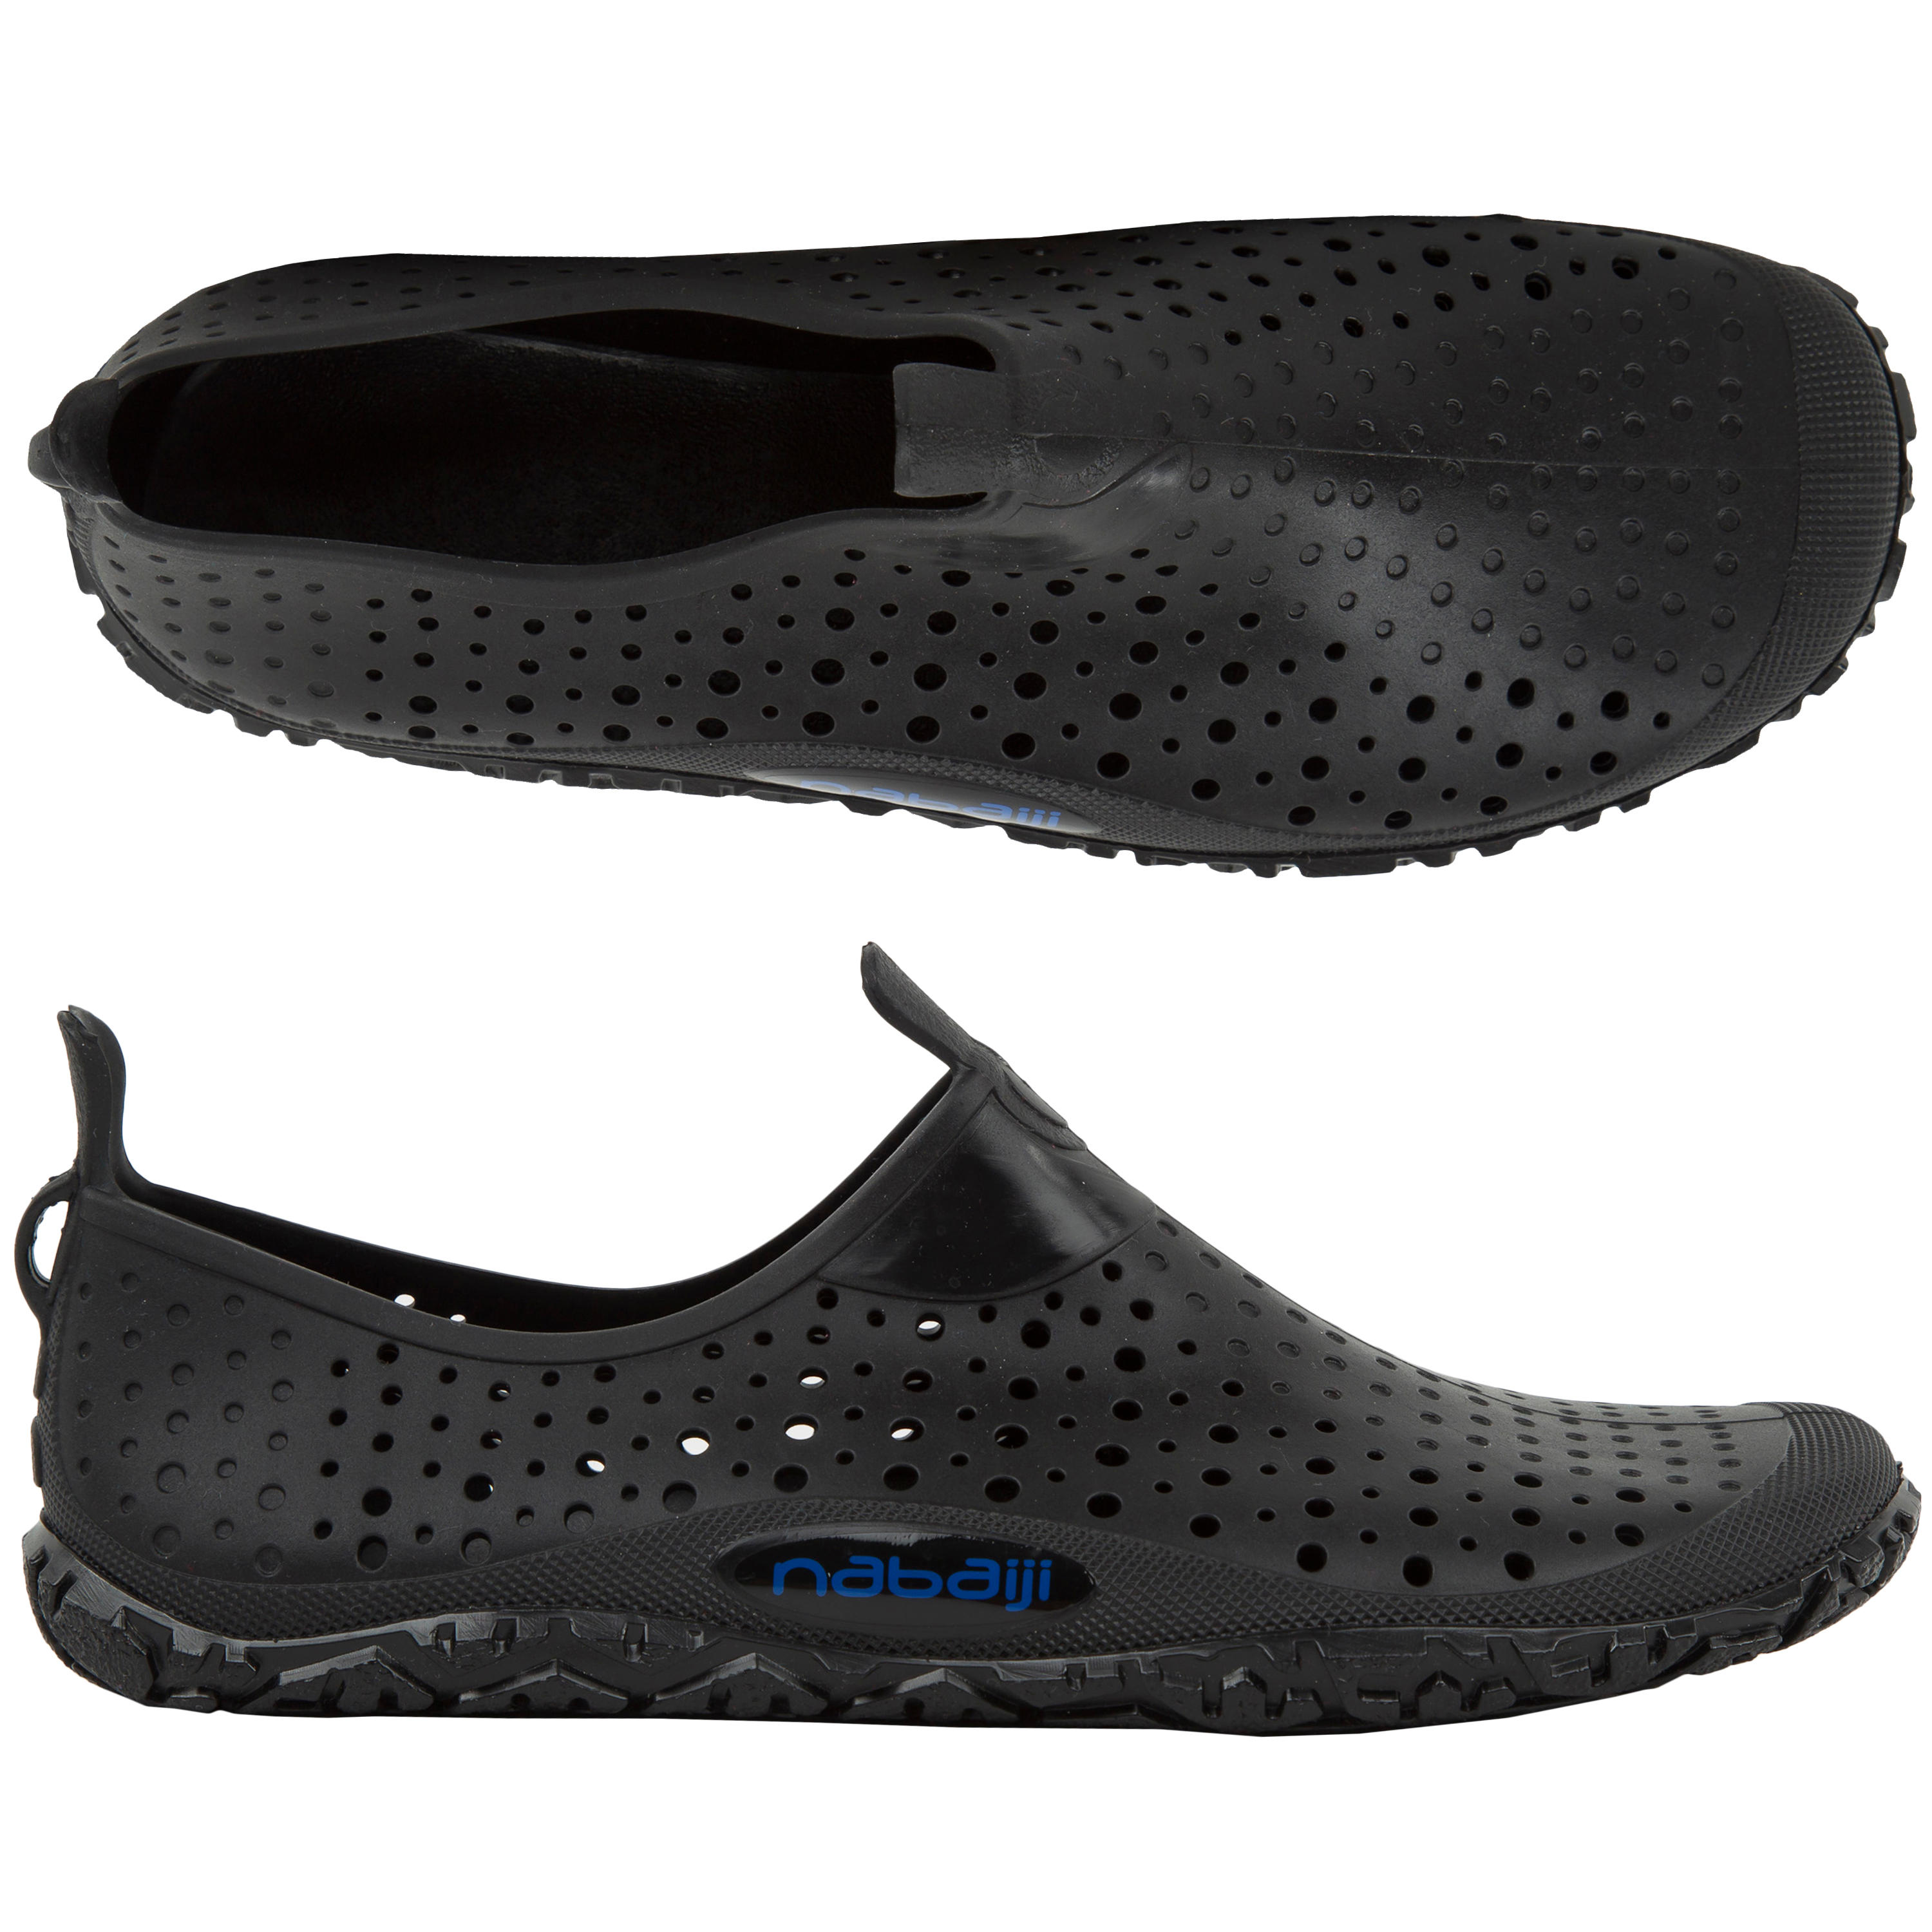 aquafit shoes canada